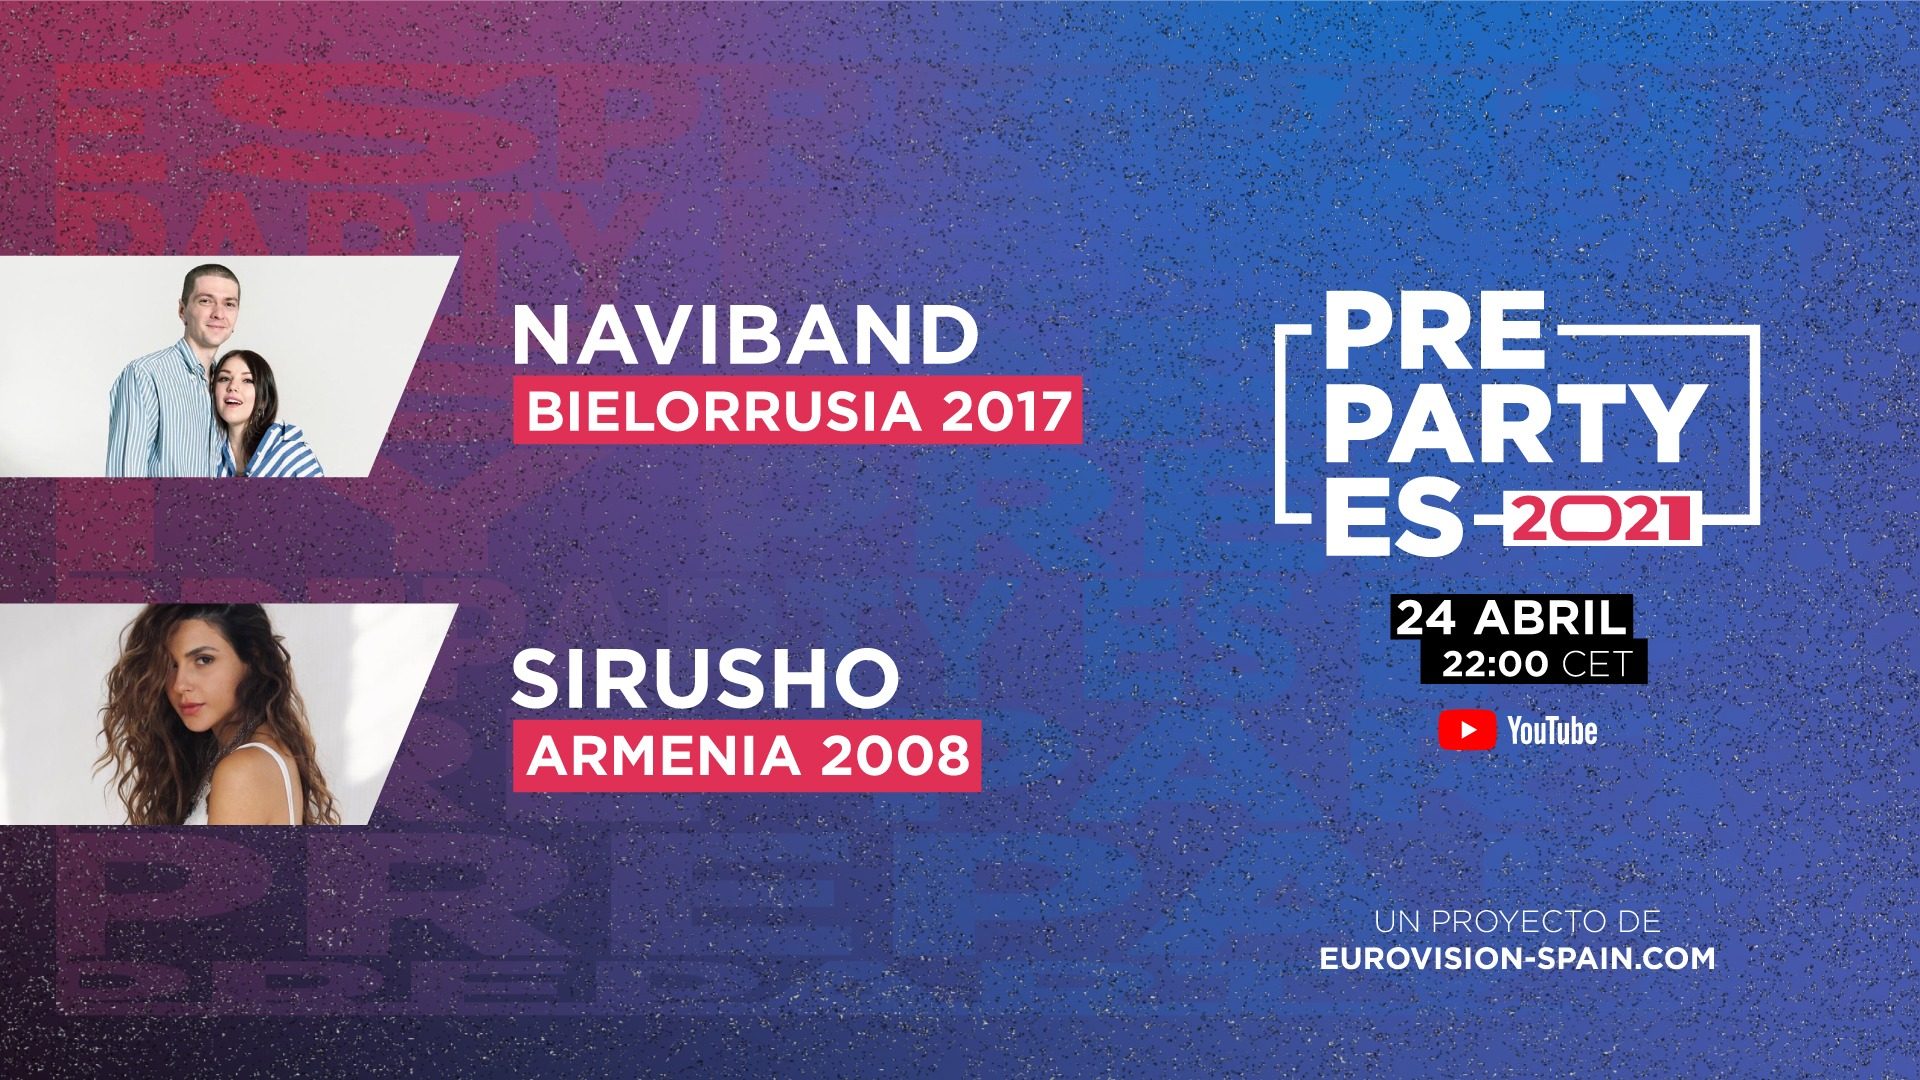 Bielorrusia y Armenia estarán representadas en la PrePartyES 2021 por Naviband y Sirusho